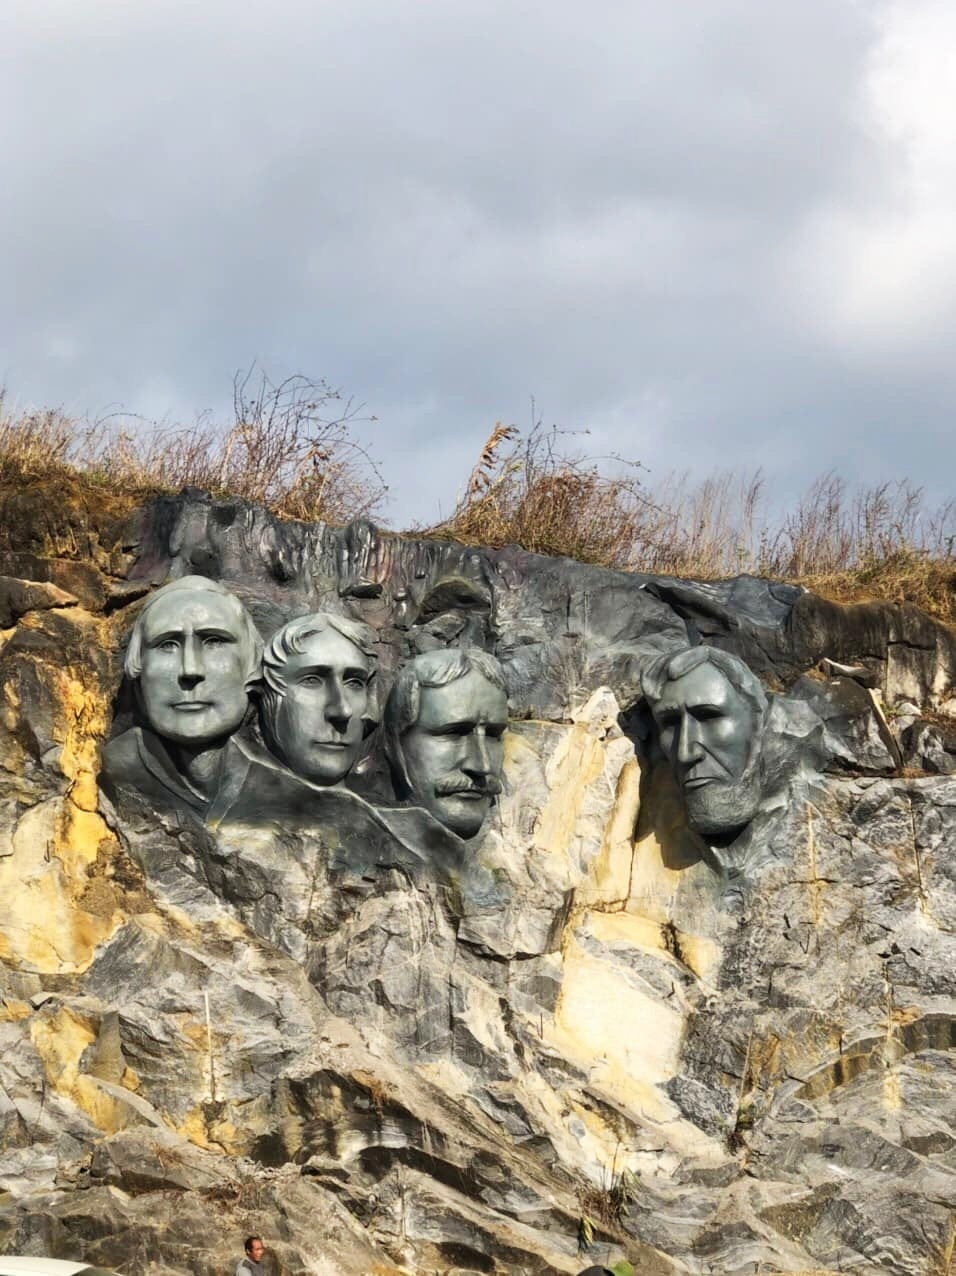  
Nơi đây còn có núi Rushmore với hình ảnh các vị Tổng thống Mỹ. (Ảnh: R.V.S.P)